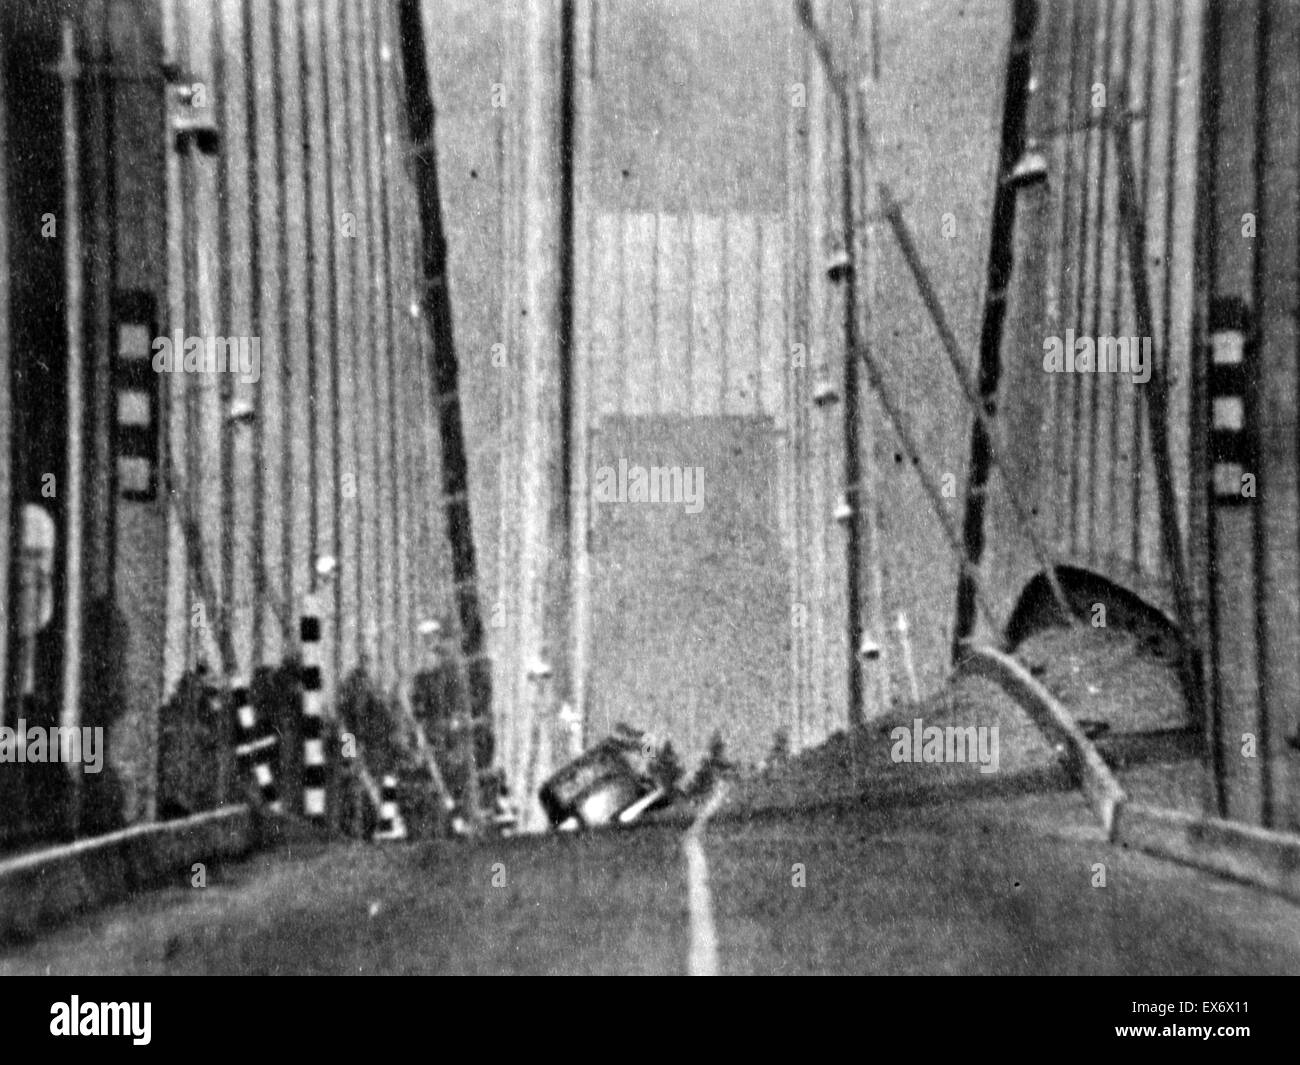 Stampa fotografica originale del Tacoma Narrows Bridge prima che il vento ha indotto il crollo. La stampa mostra il fenomeno fisico noto come flutter aerolastic, che è l'instabilità dinamica di una struttura elastica in un flusso di fluido, causata da un positivo Foto Stock